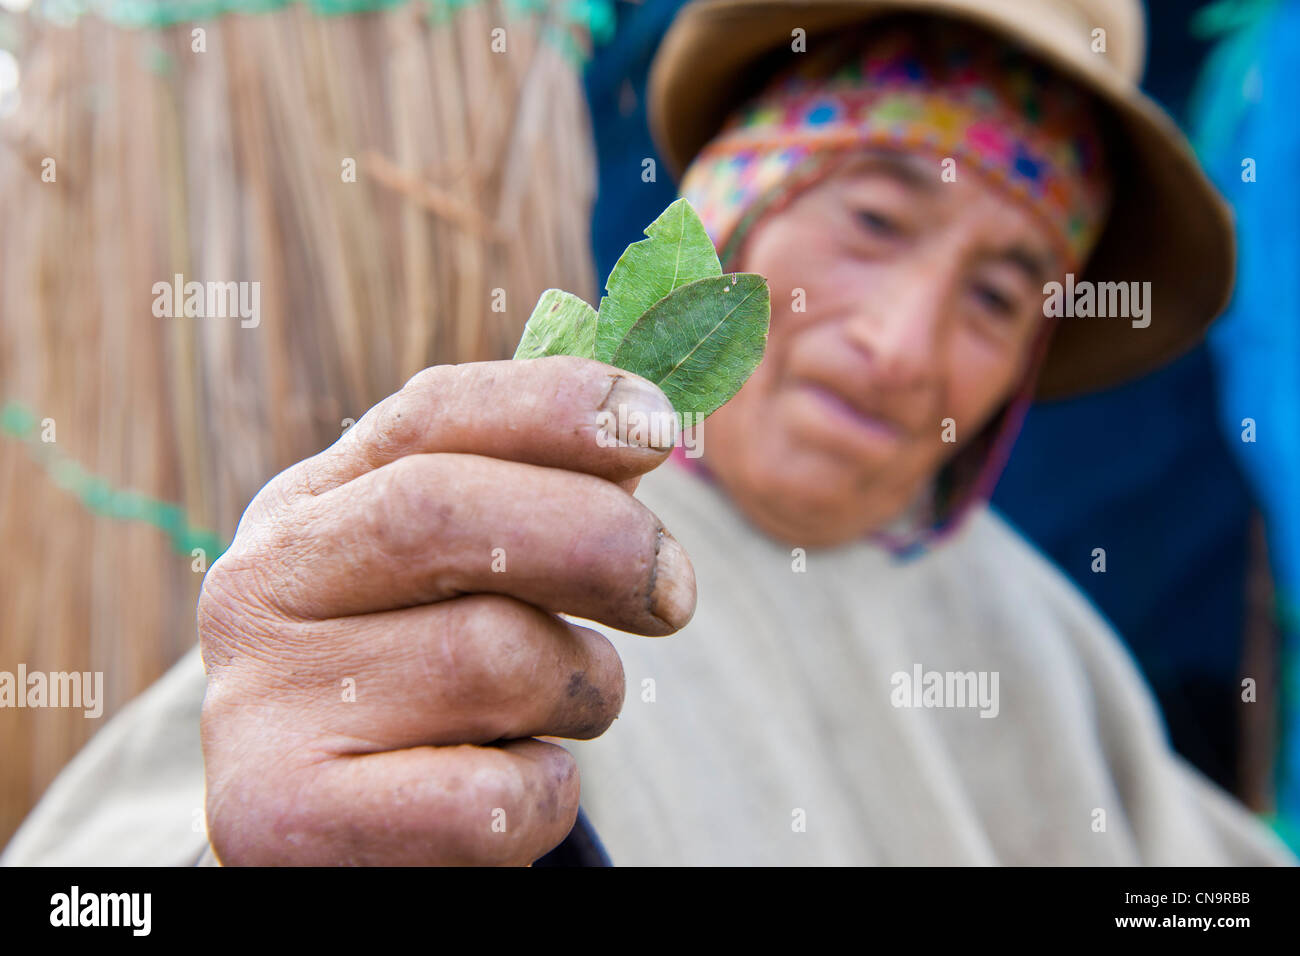 Le Pérou, Cuzco province, Huasao, classé village touristique mystique, shaman (curandero) présentant des feuilles de coca Banque D'Images